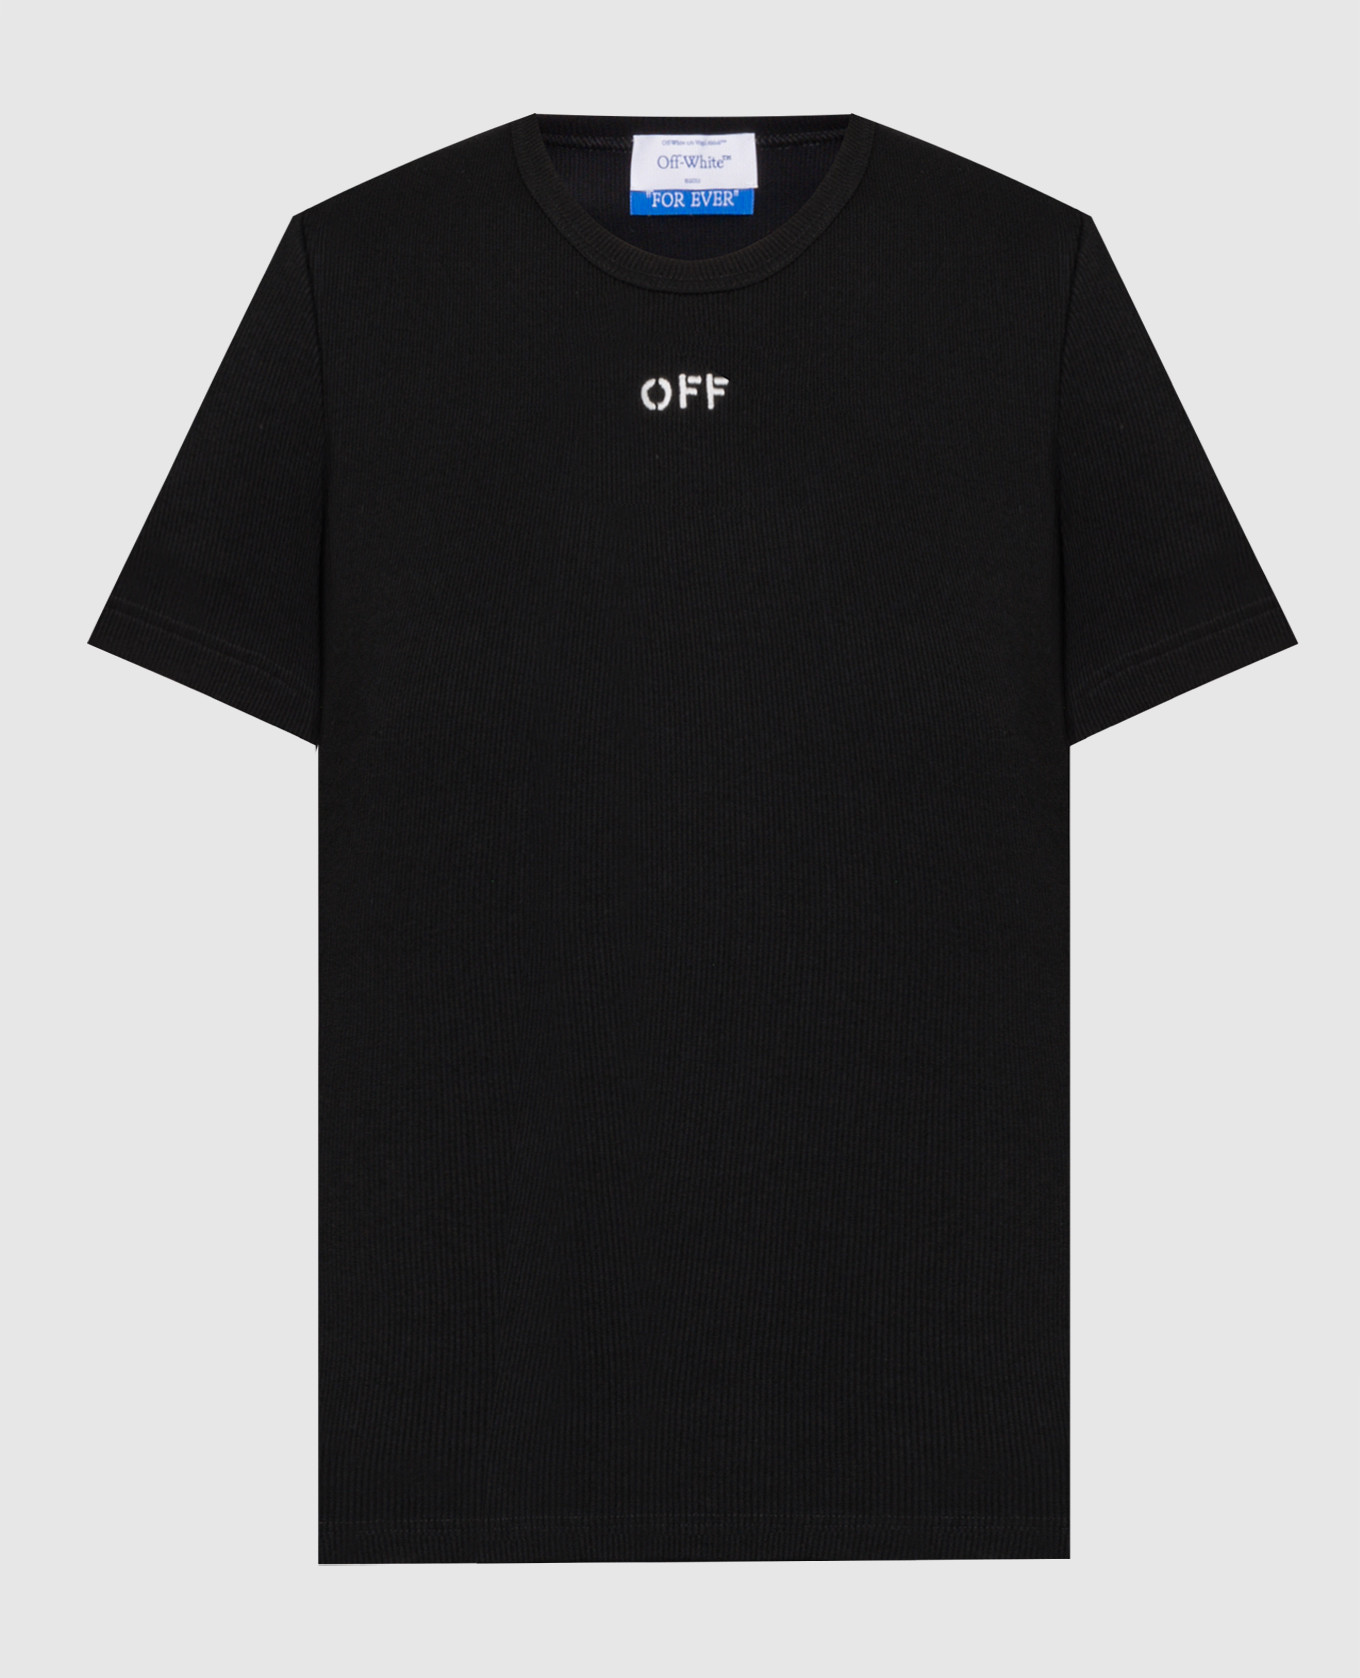 Черная футболка с контрастной вышивкой логотипа